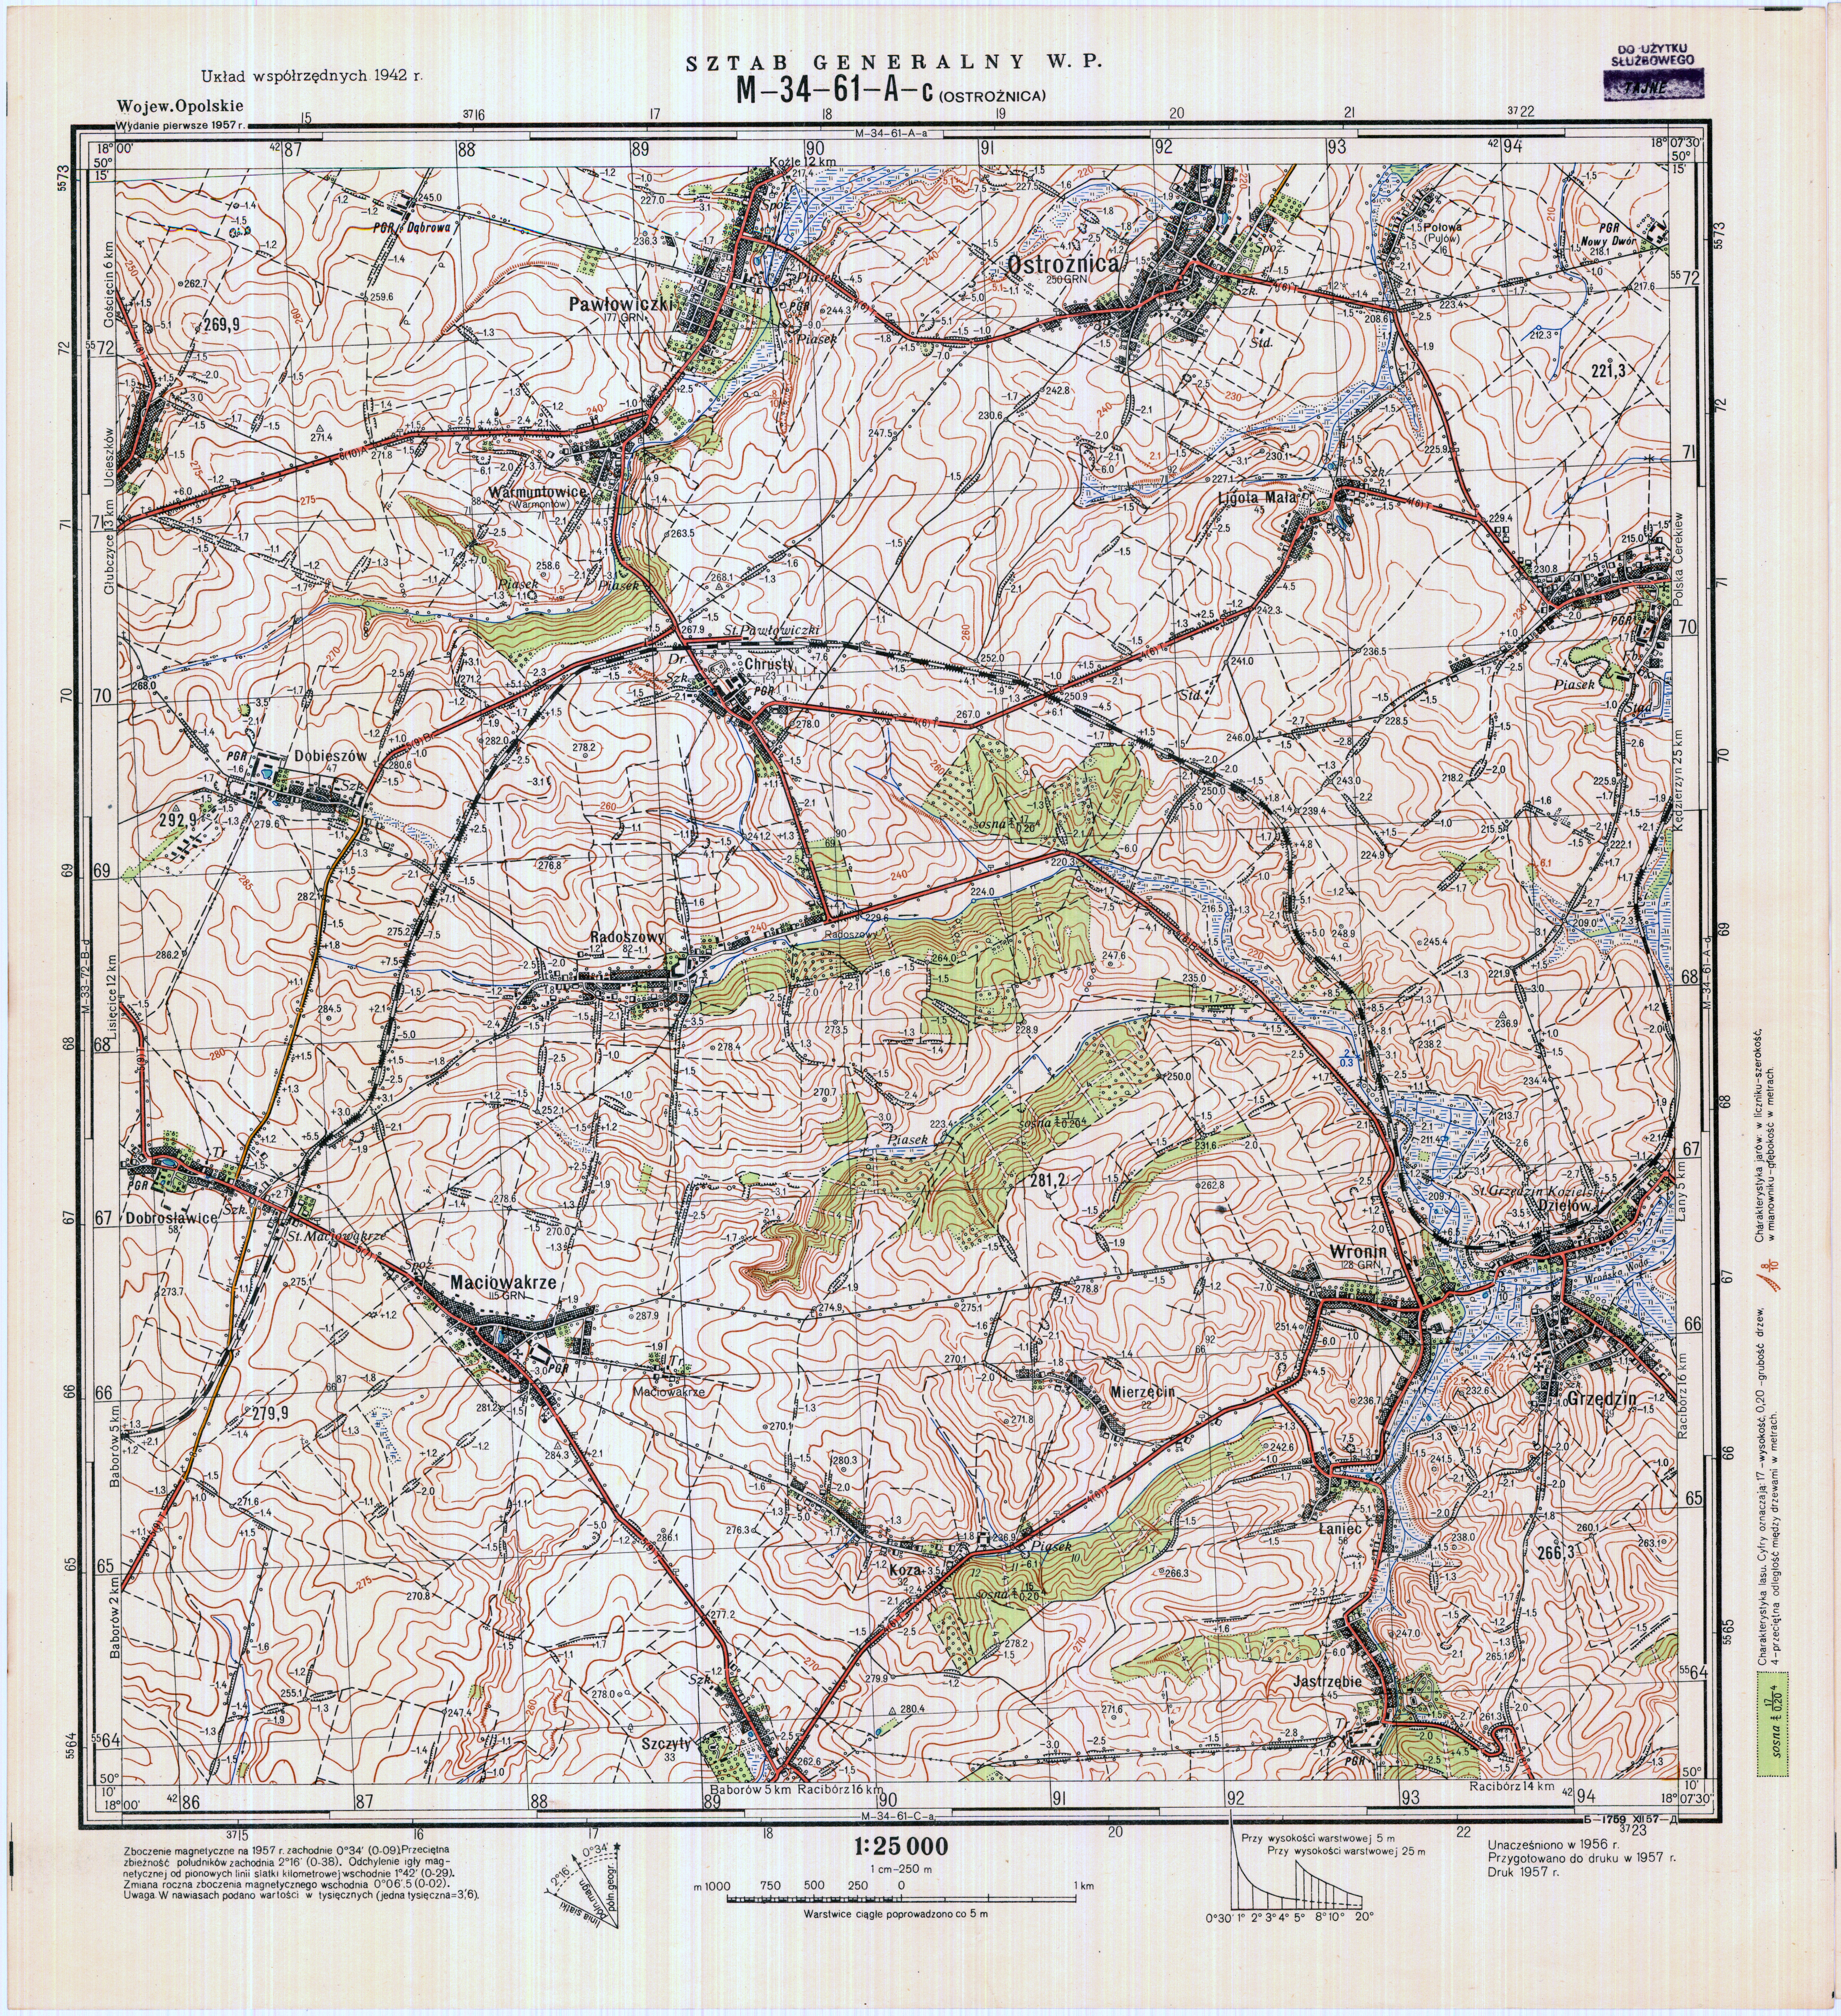 Mapy topograficzne LWP 1_25 000 - M-34-61-A-c_OSTROZNICA_1957.jpg